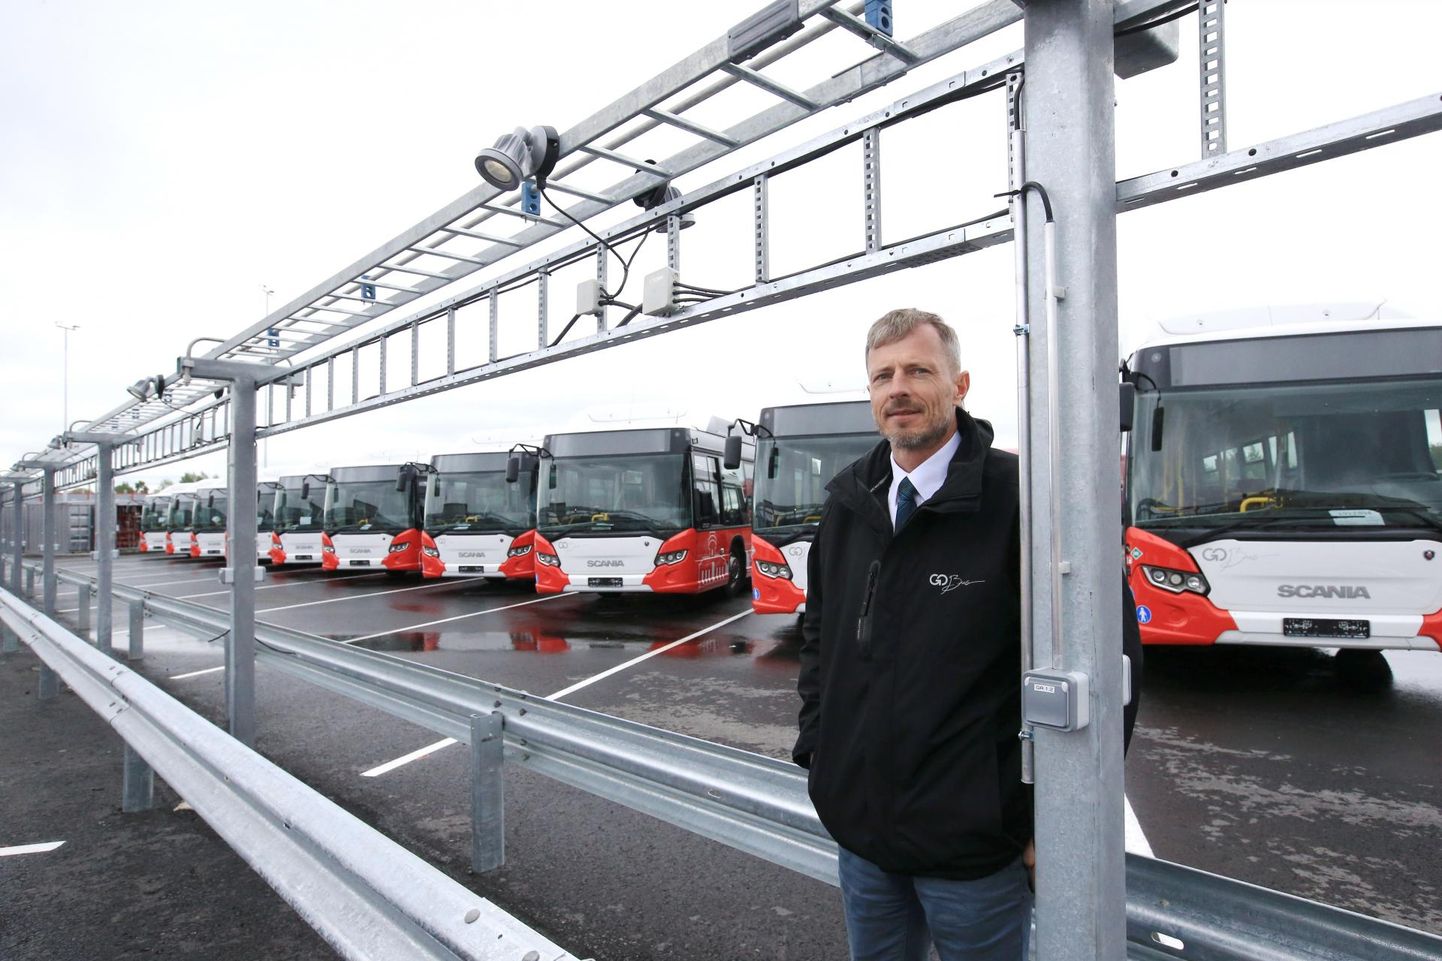 Go Busi Lõuna piirkonna juht Kalle Saviste näitas eile Tartu uusi linnaliinibusse ja nende tarvis ehitatud gaasitanklat Ringteel ettevõtte õuel.